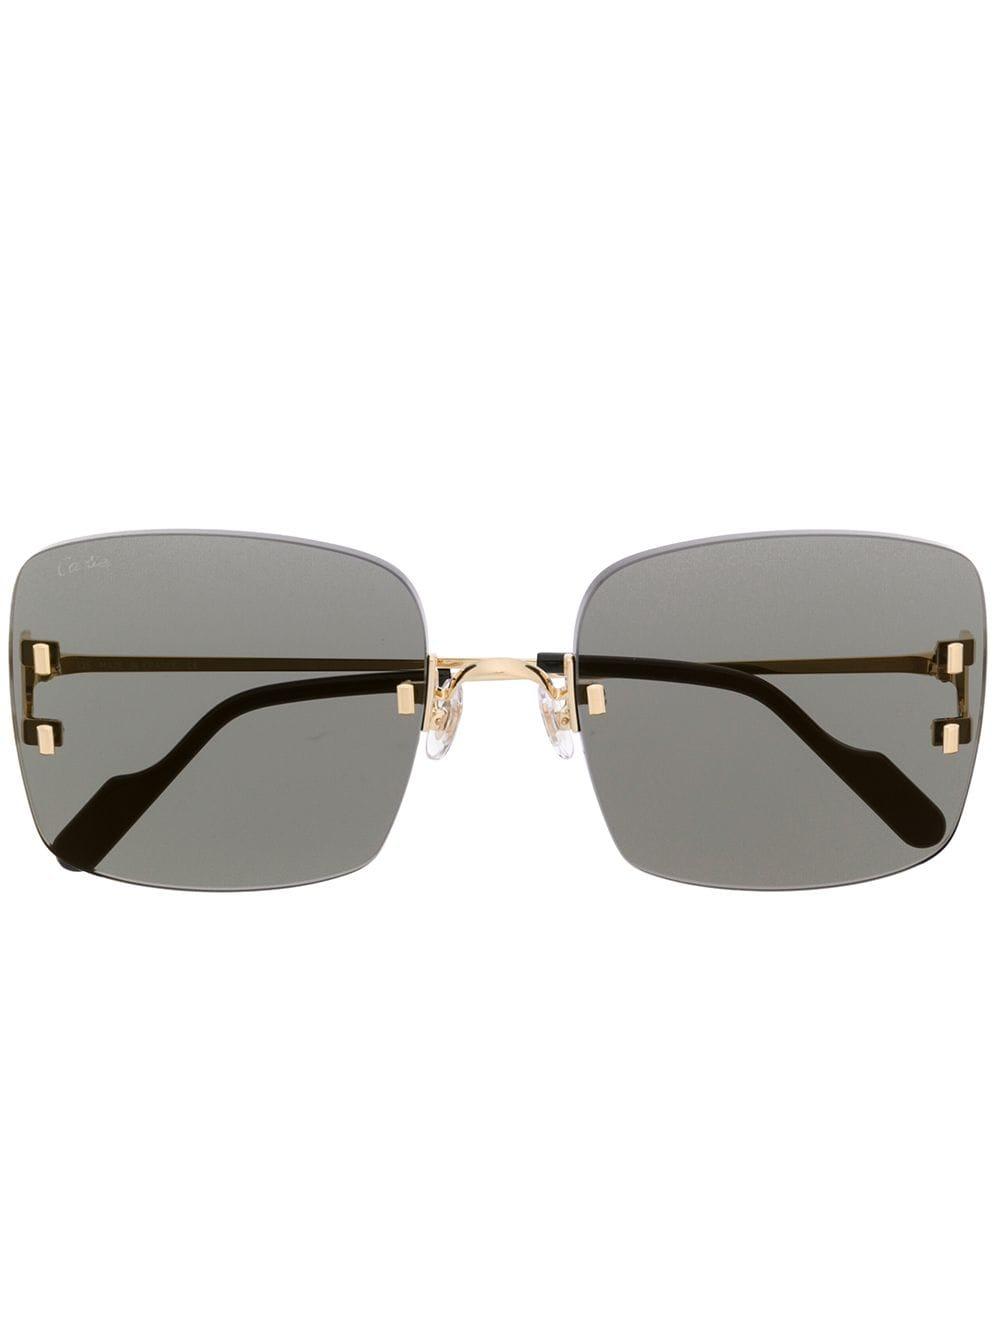 Details more than 201 uncut gems sunglasses super hot